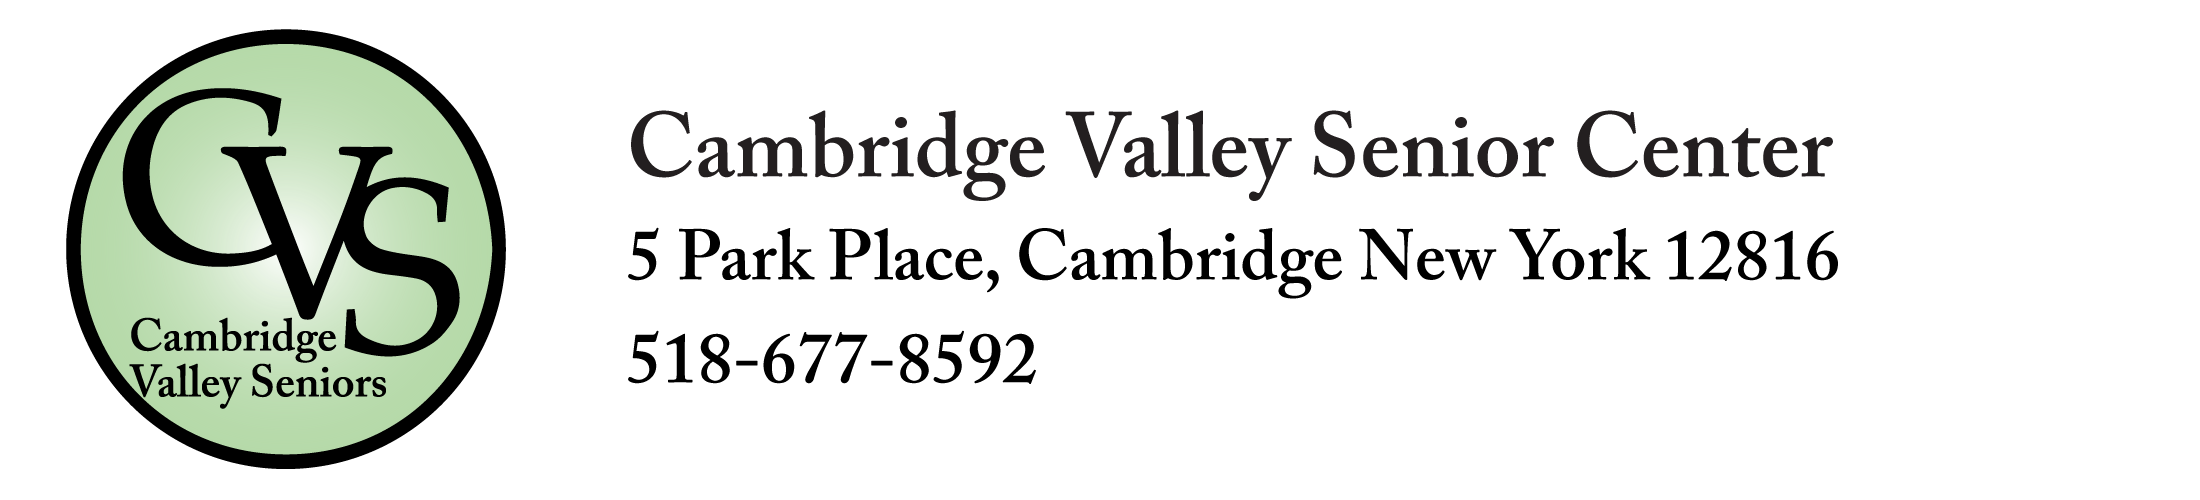 Cambridge Valley Senior Center